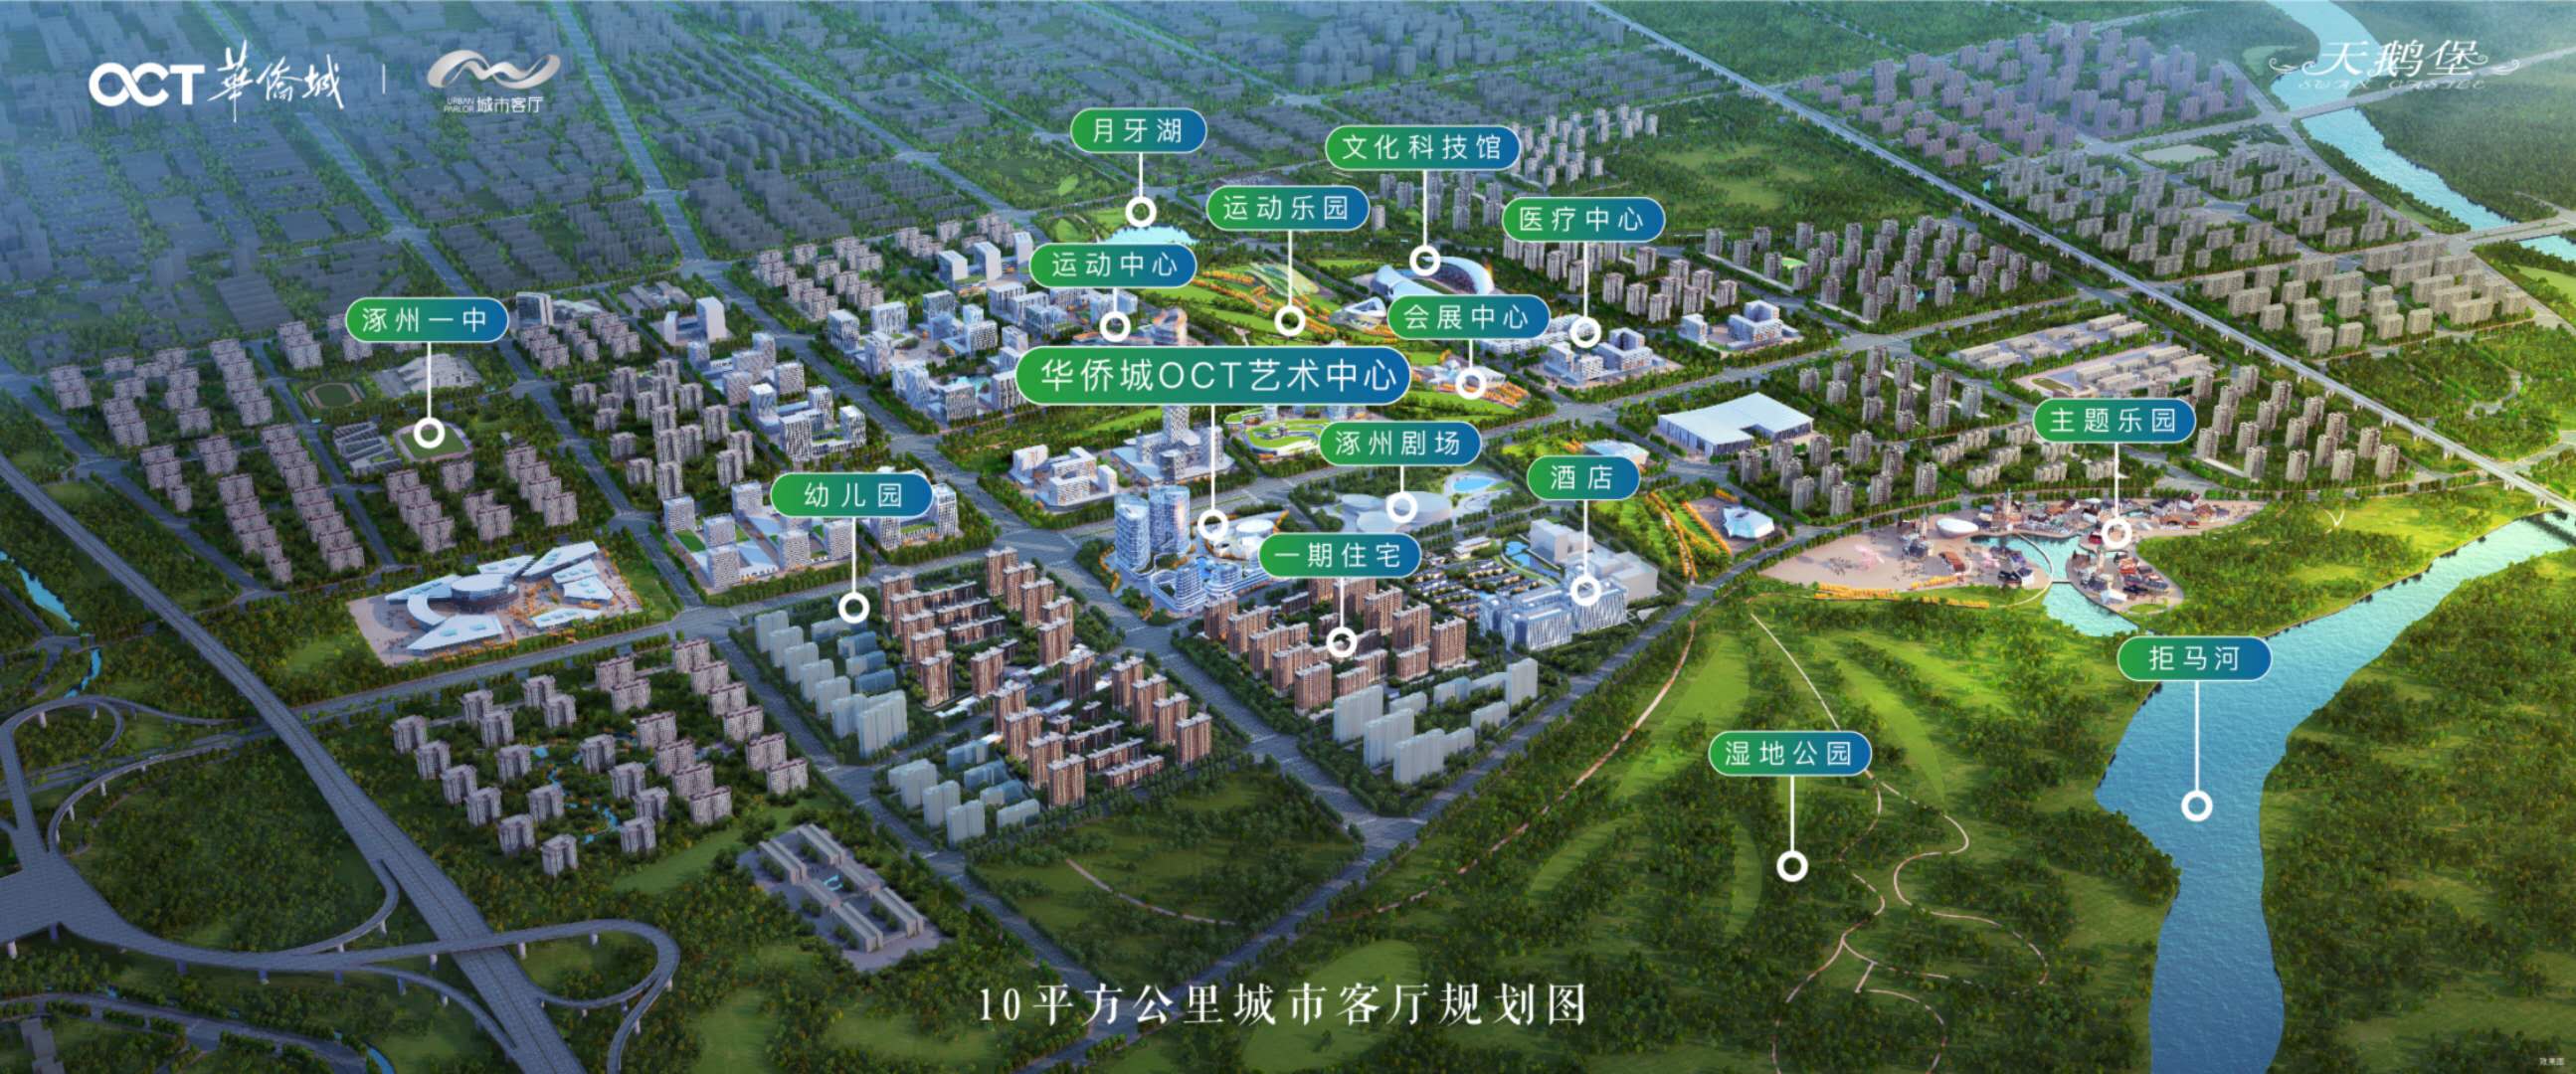 涿州华侨城规划沙盘